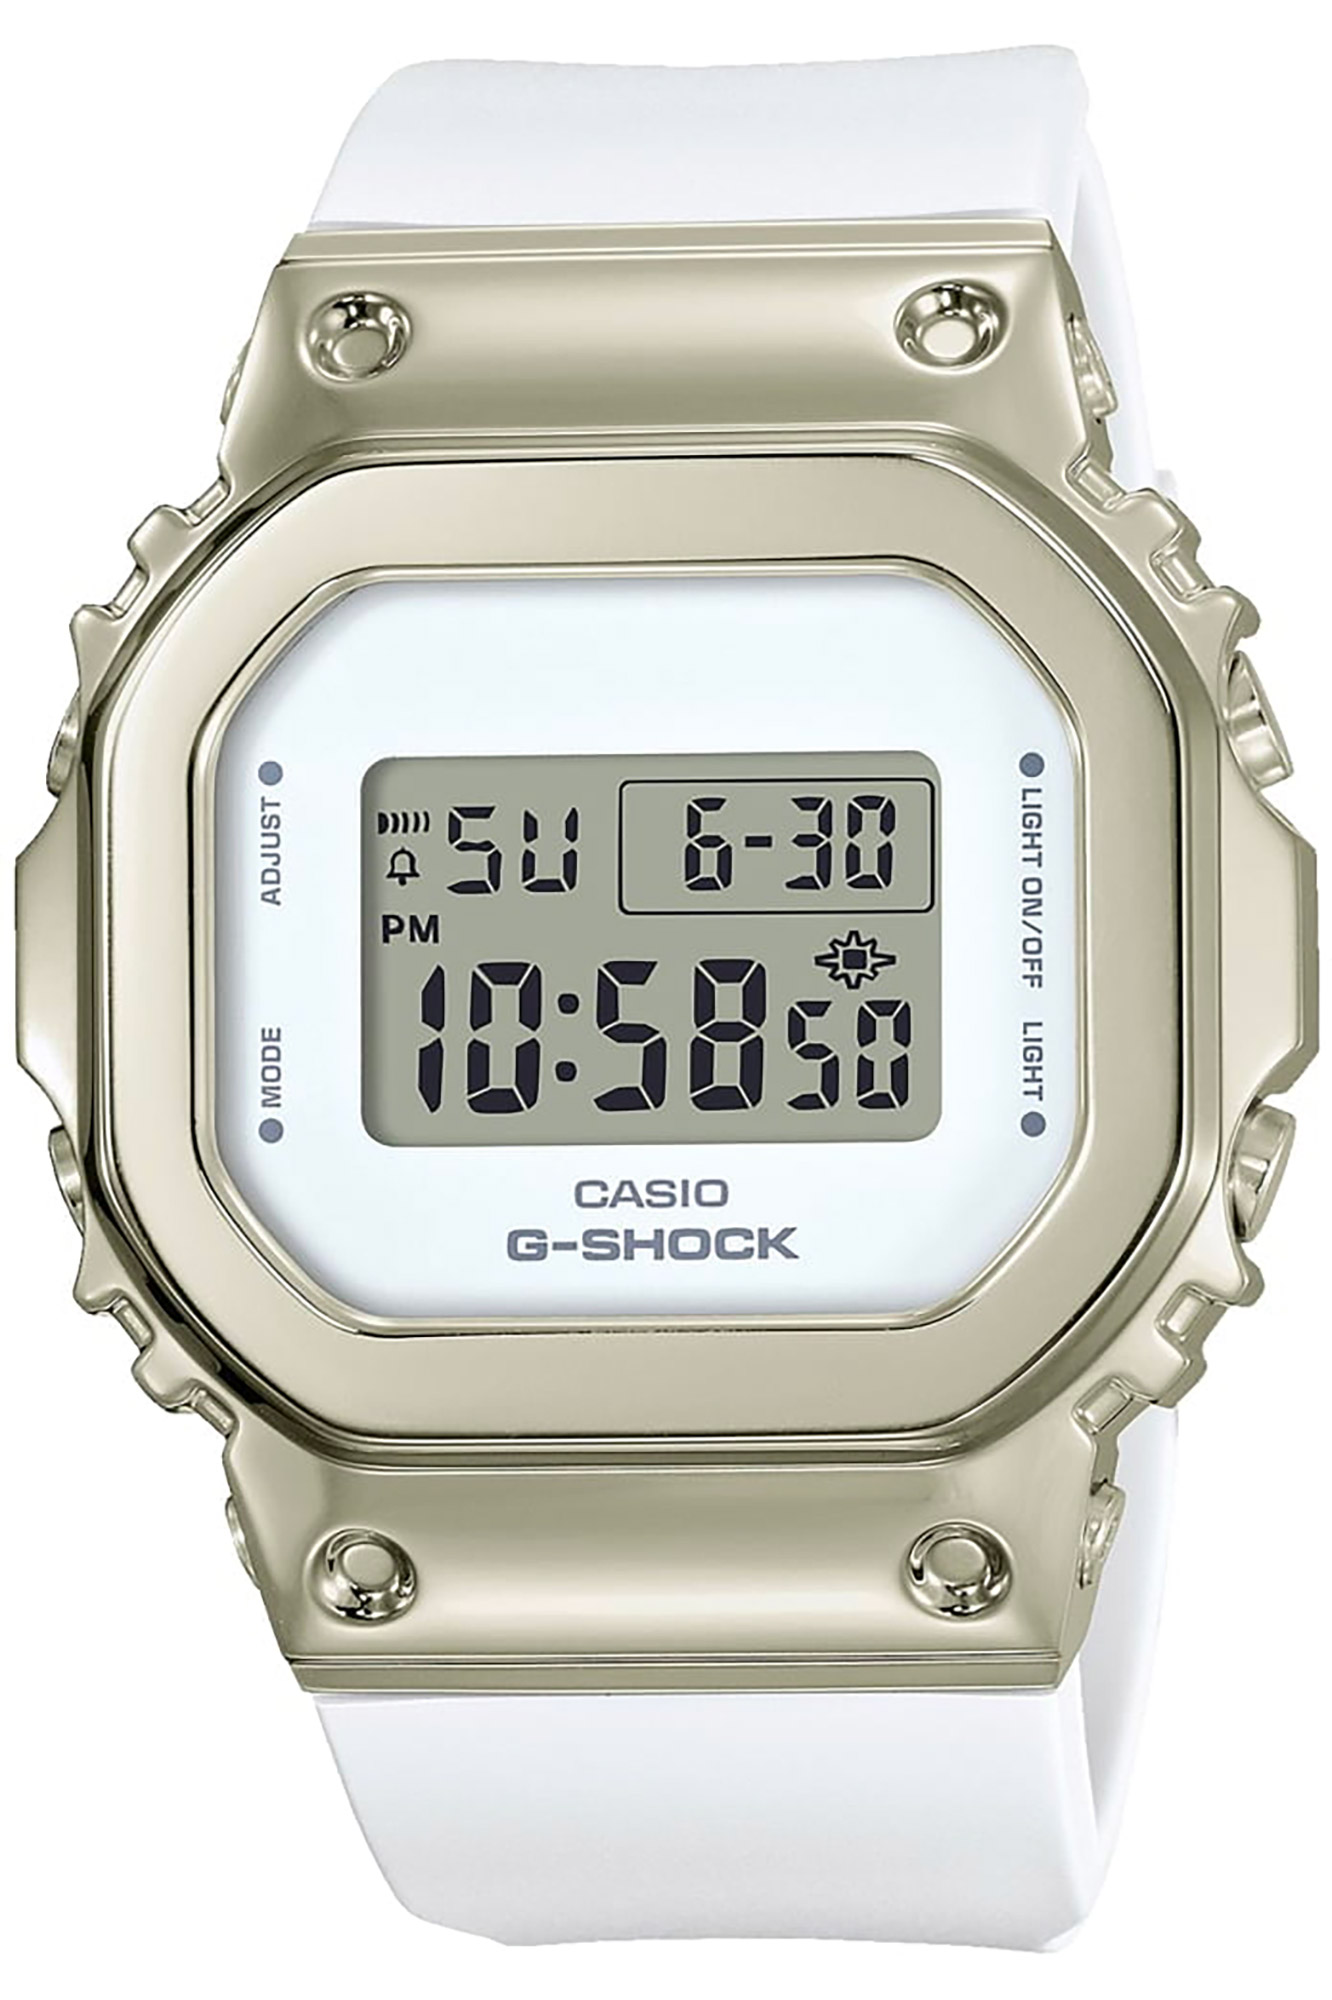 Uhr CASIO G-Shock gm-s5600g-7er